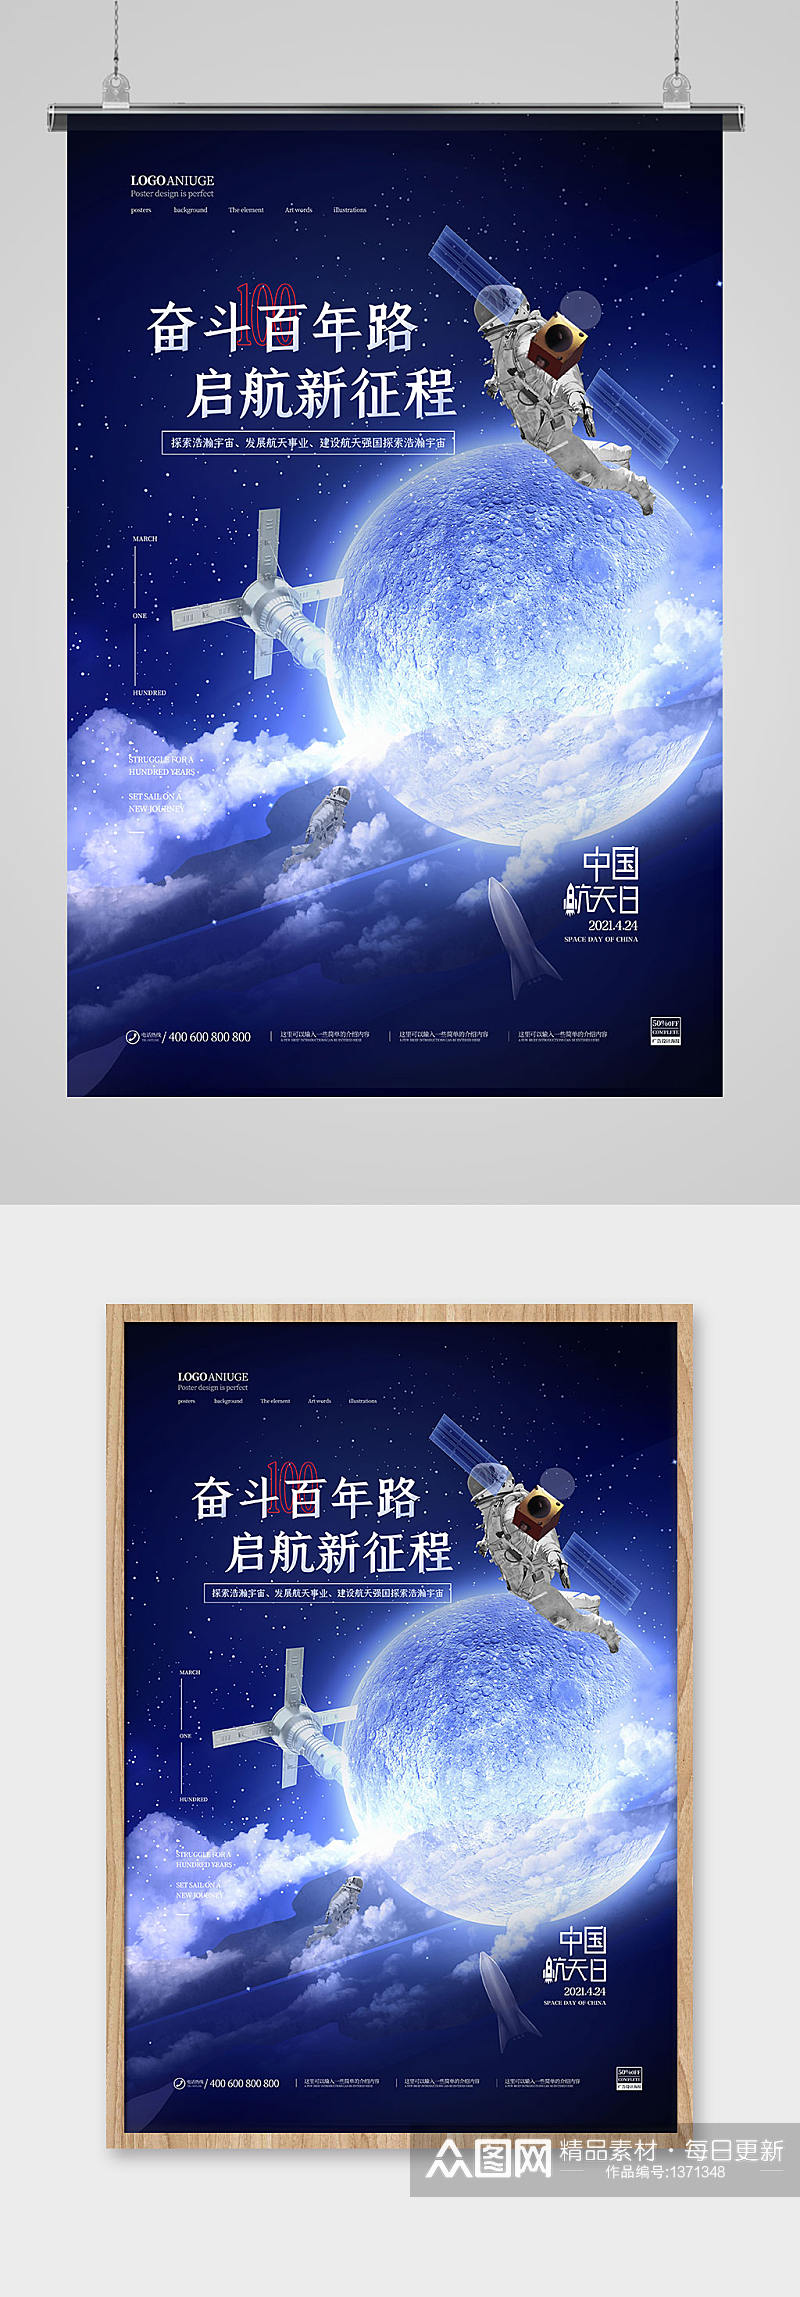 浩瀚宇宙百年航天梦中国航天日海报素材